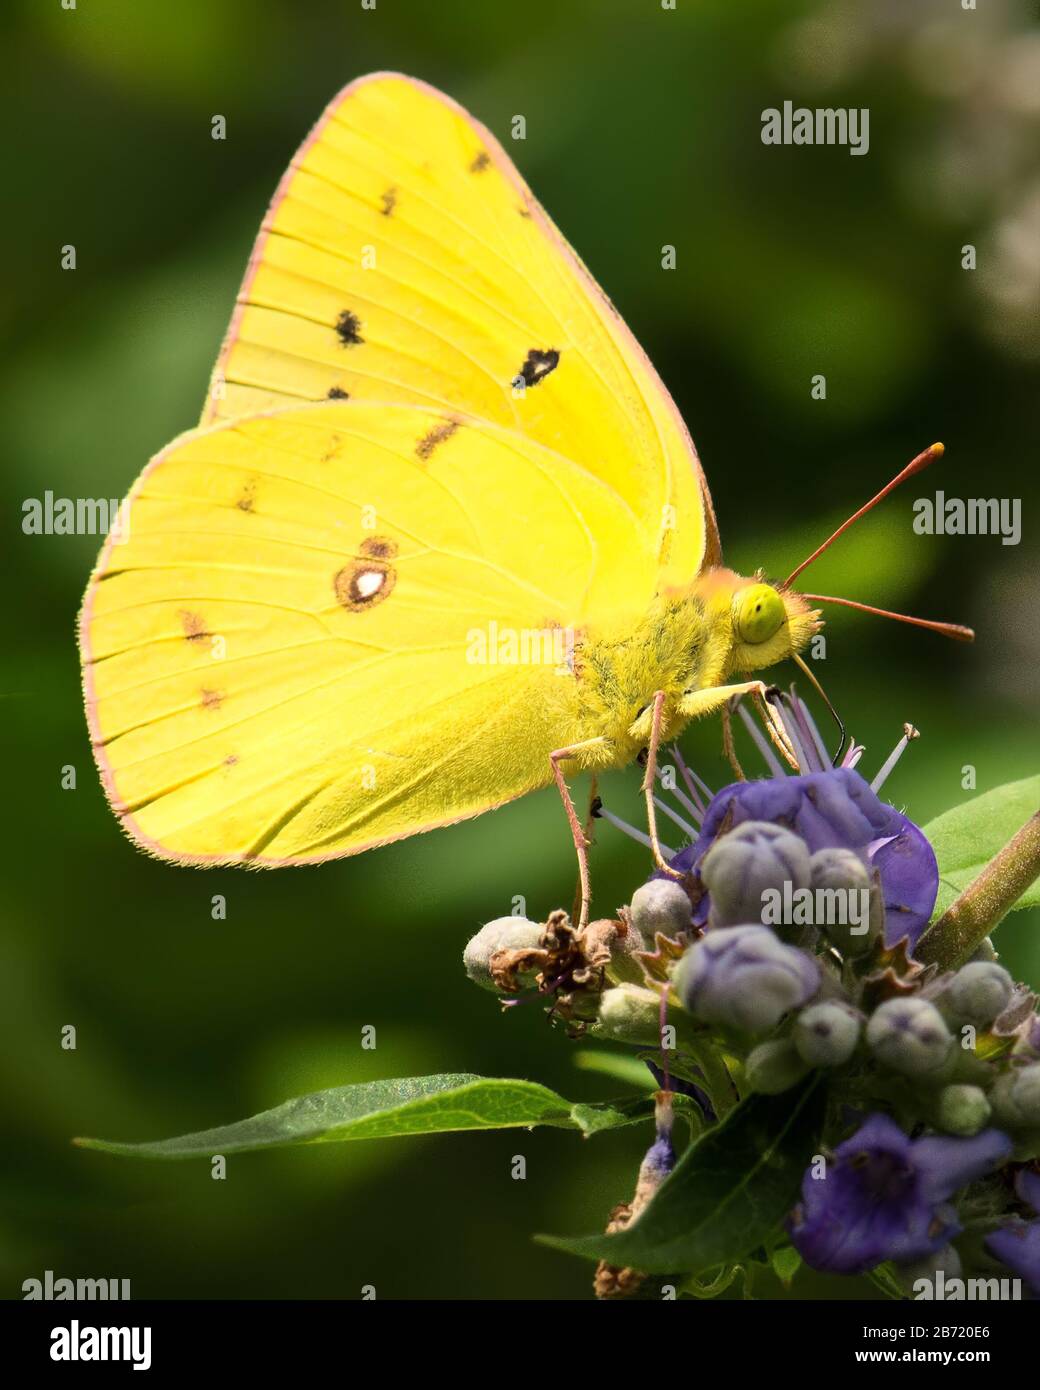 Nahaufnahme von hellgelbem, zarten Schmetterling, der als wolkenloser Schwefel bezeichnet wird, auf einer Gruppe von violetten Blumen. Stockfoto